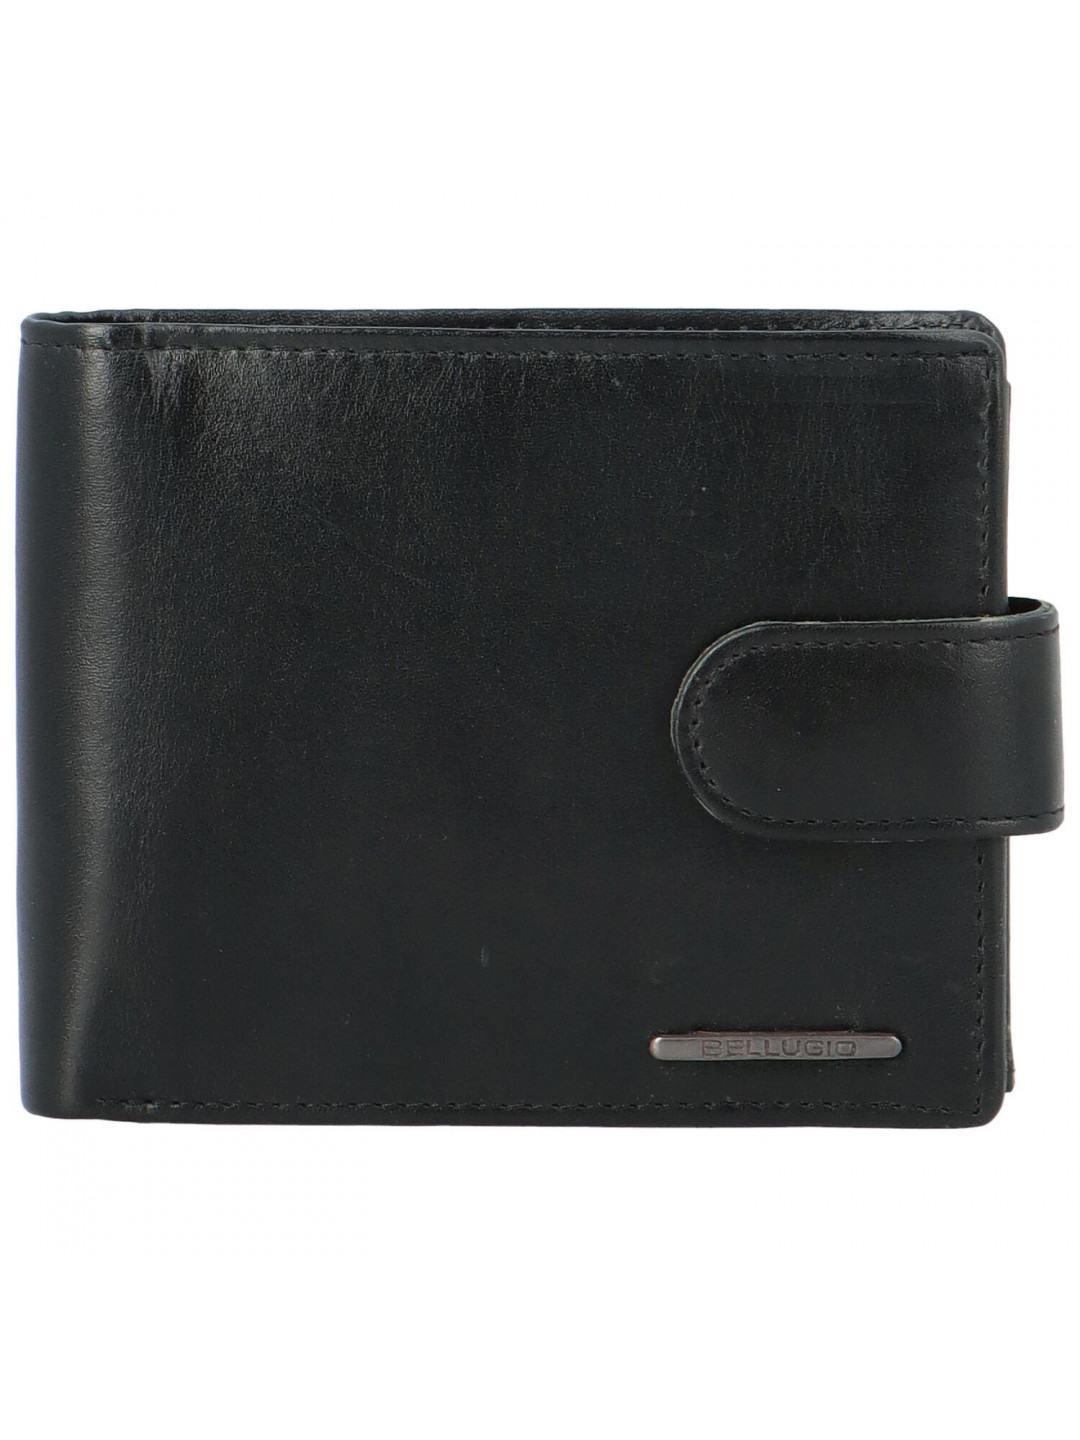 Pánská kožená peněženka černá – Bellugio Daviss